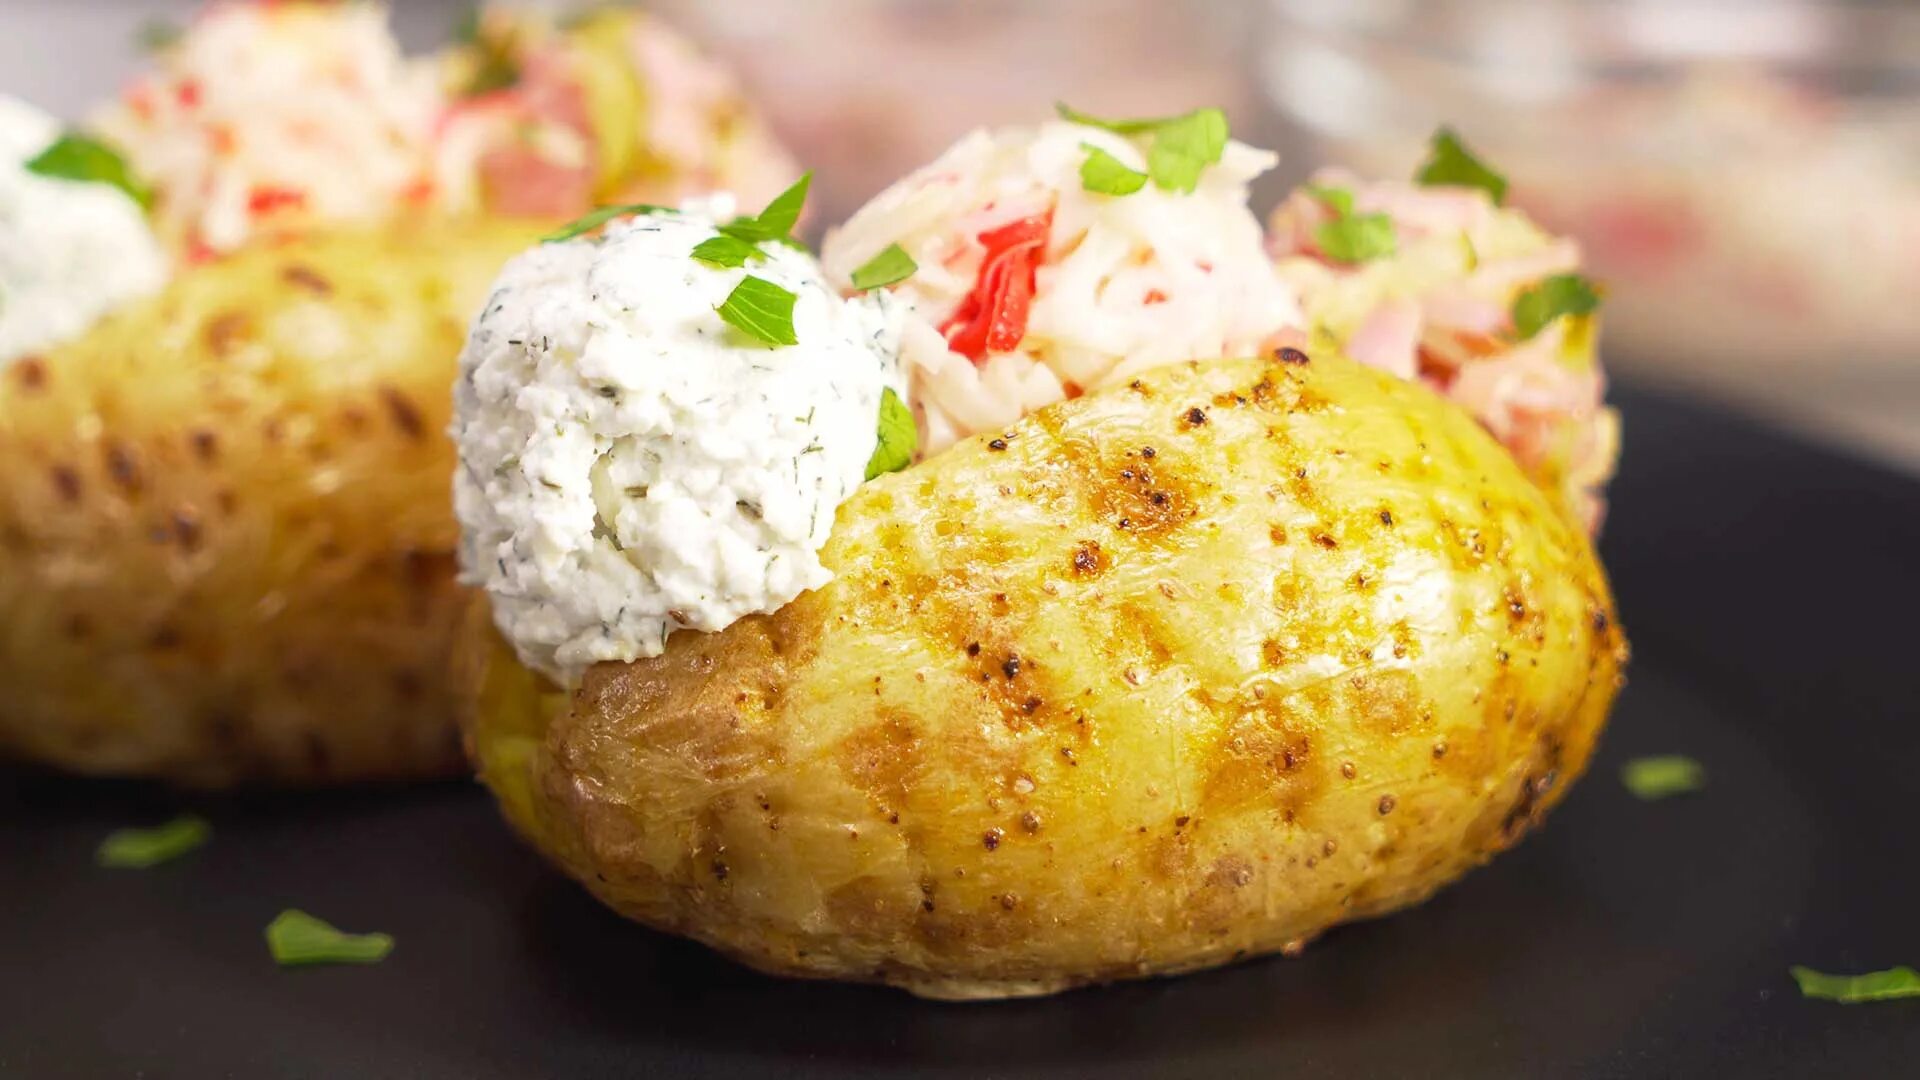 Крошка картошка 1. Печеный картофель крошка-картошка. Картофель запеченный крошка картошка. Картошка из крошки картошки. Крошка-картошка (запеченная в духовке).